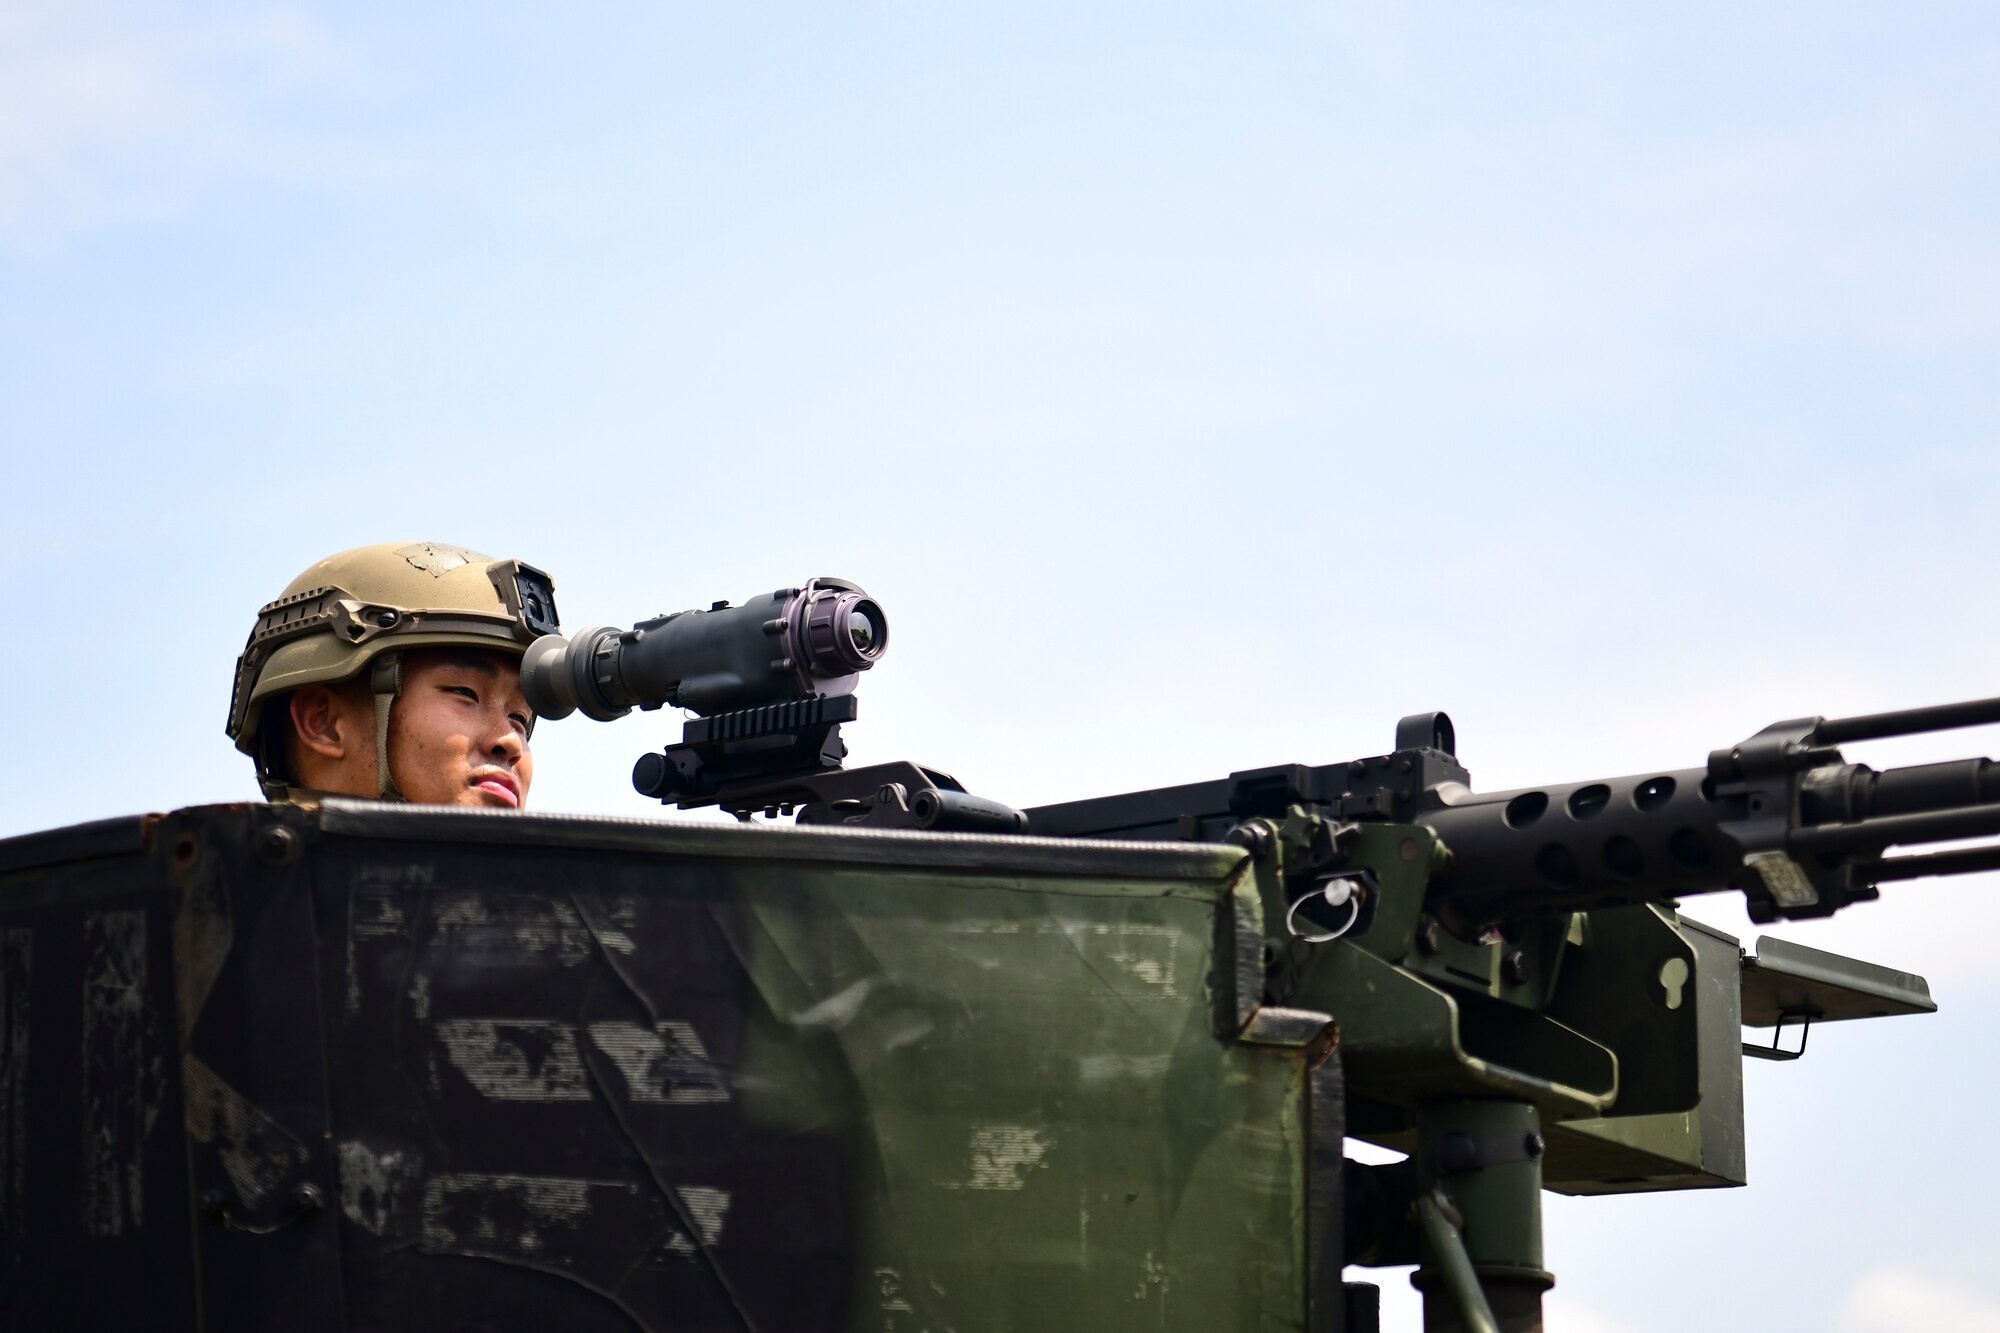 An Airmen looks into a machine gun.